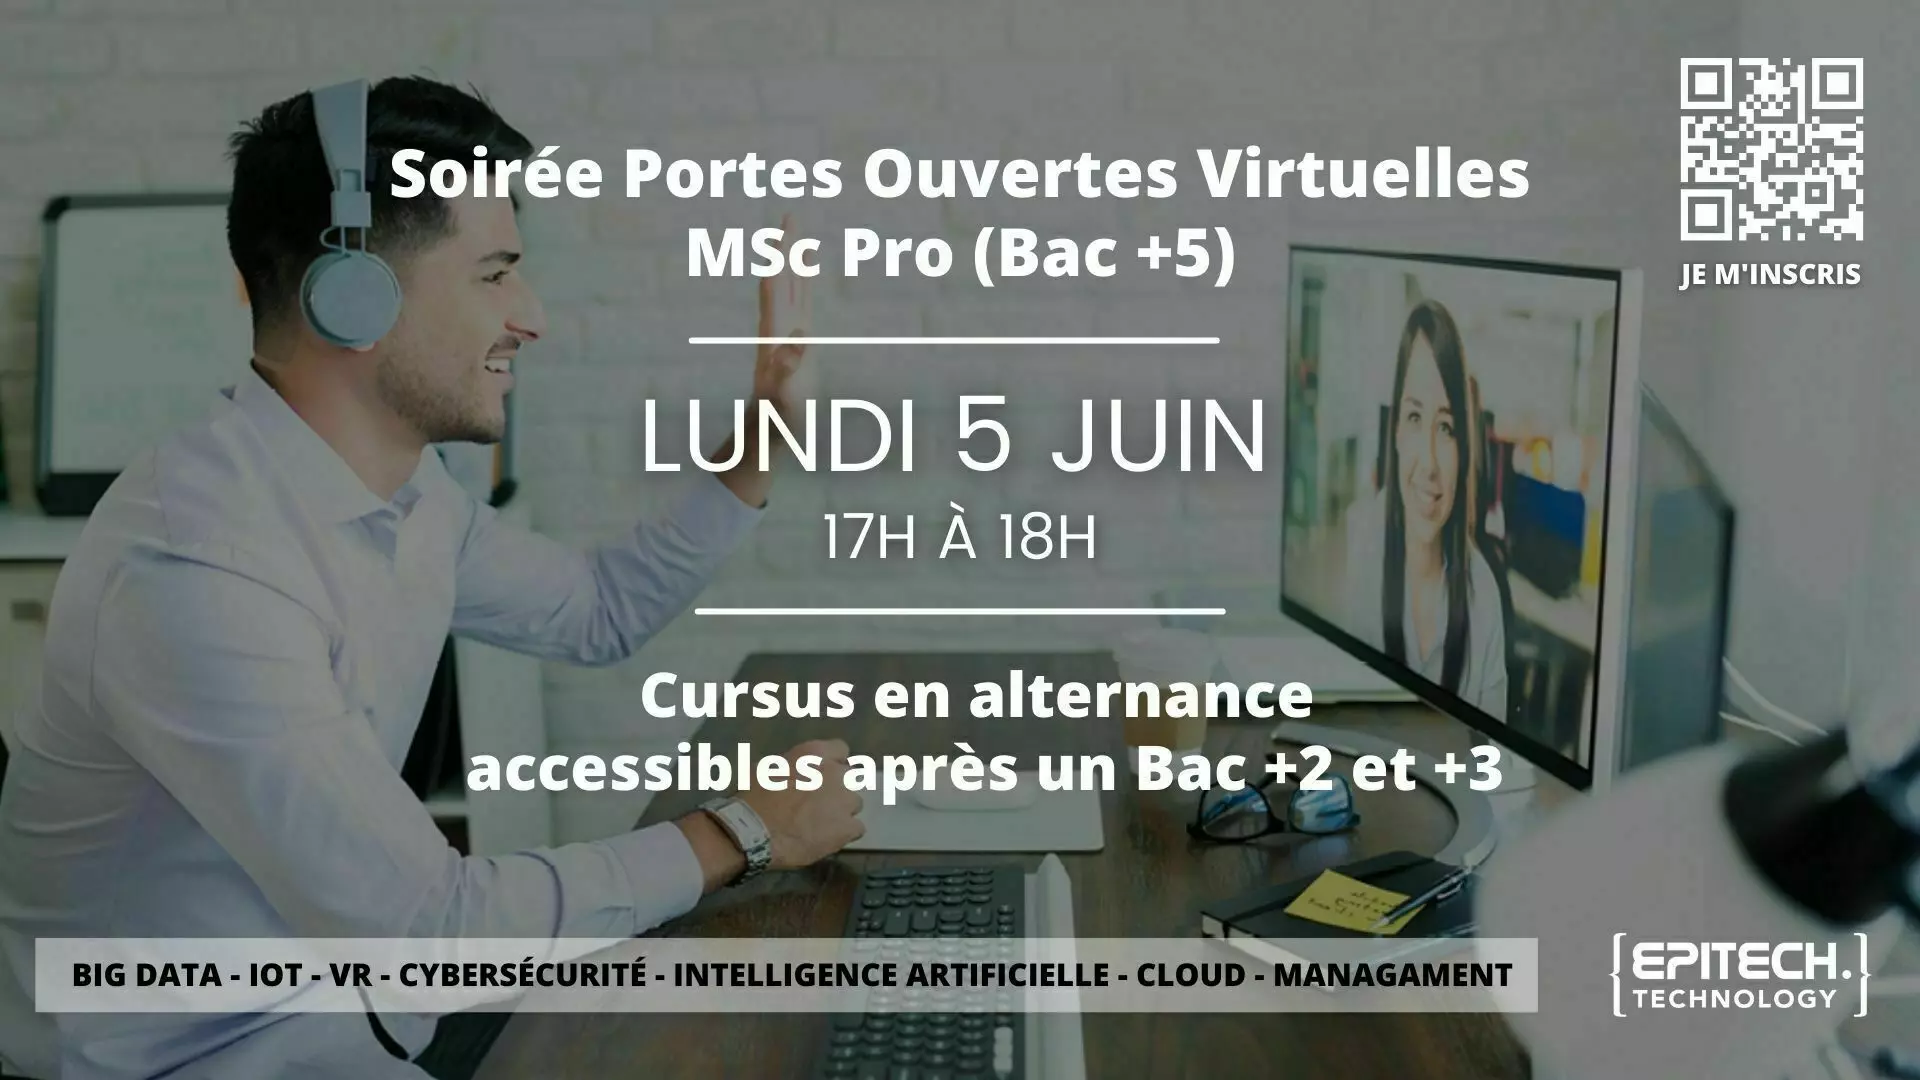 Rassemblements-Soirée Portes Ouvertes Virtuelles Epitech Rennes - Programmes MSc Pro en alternance